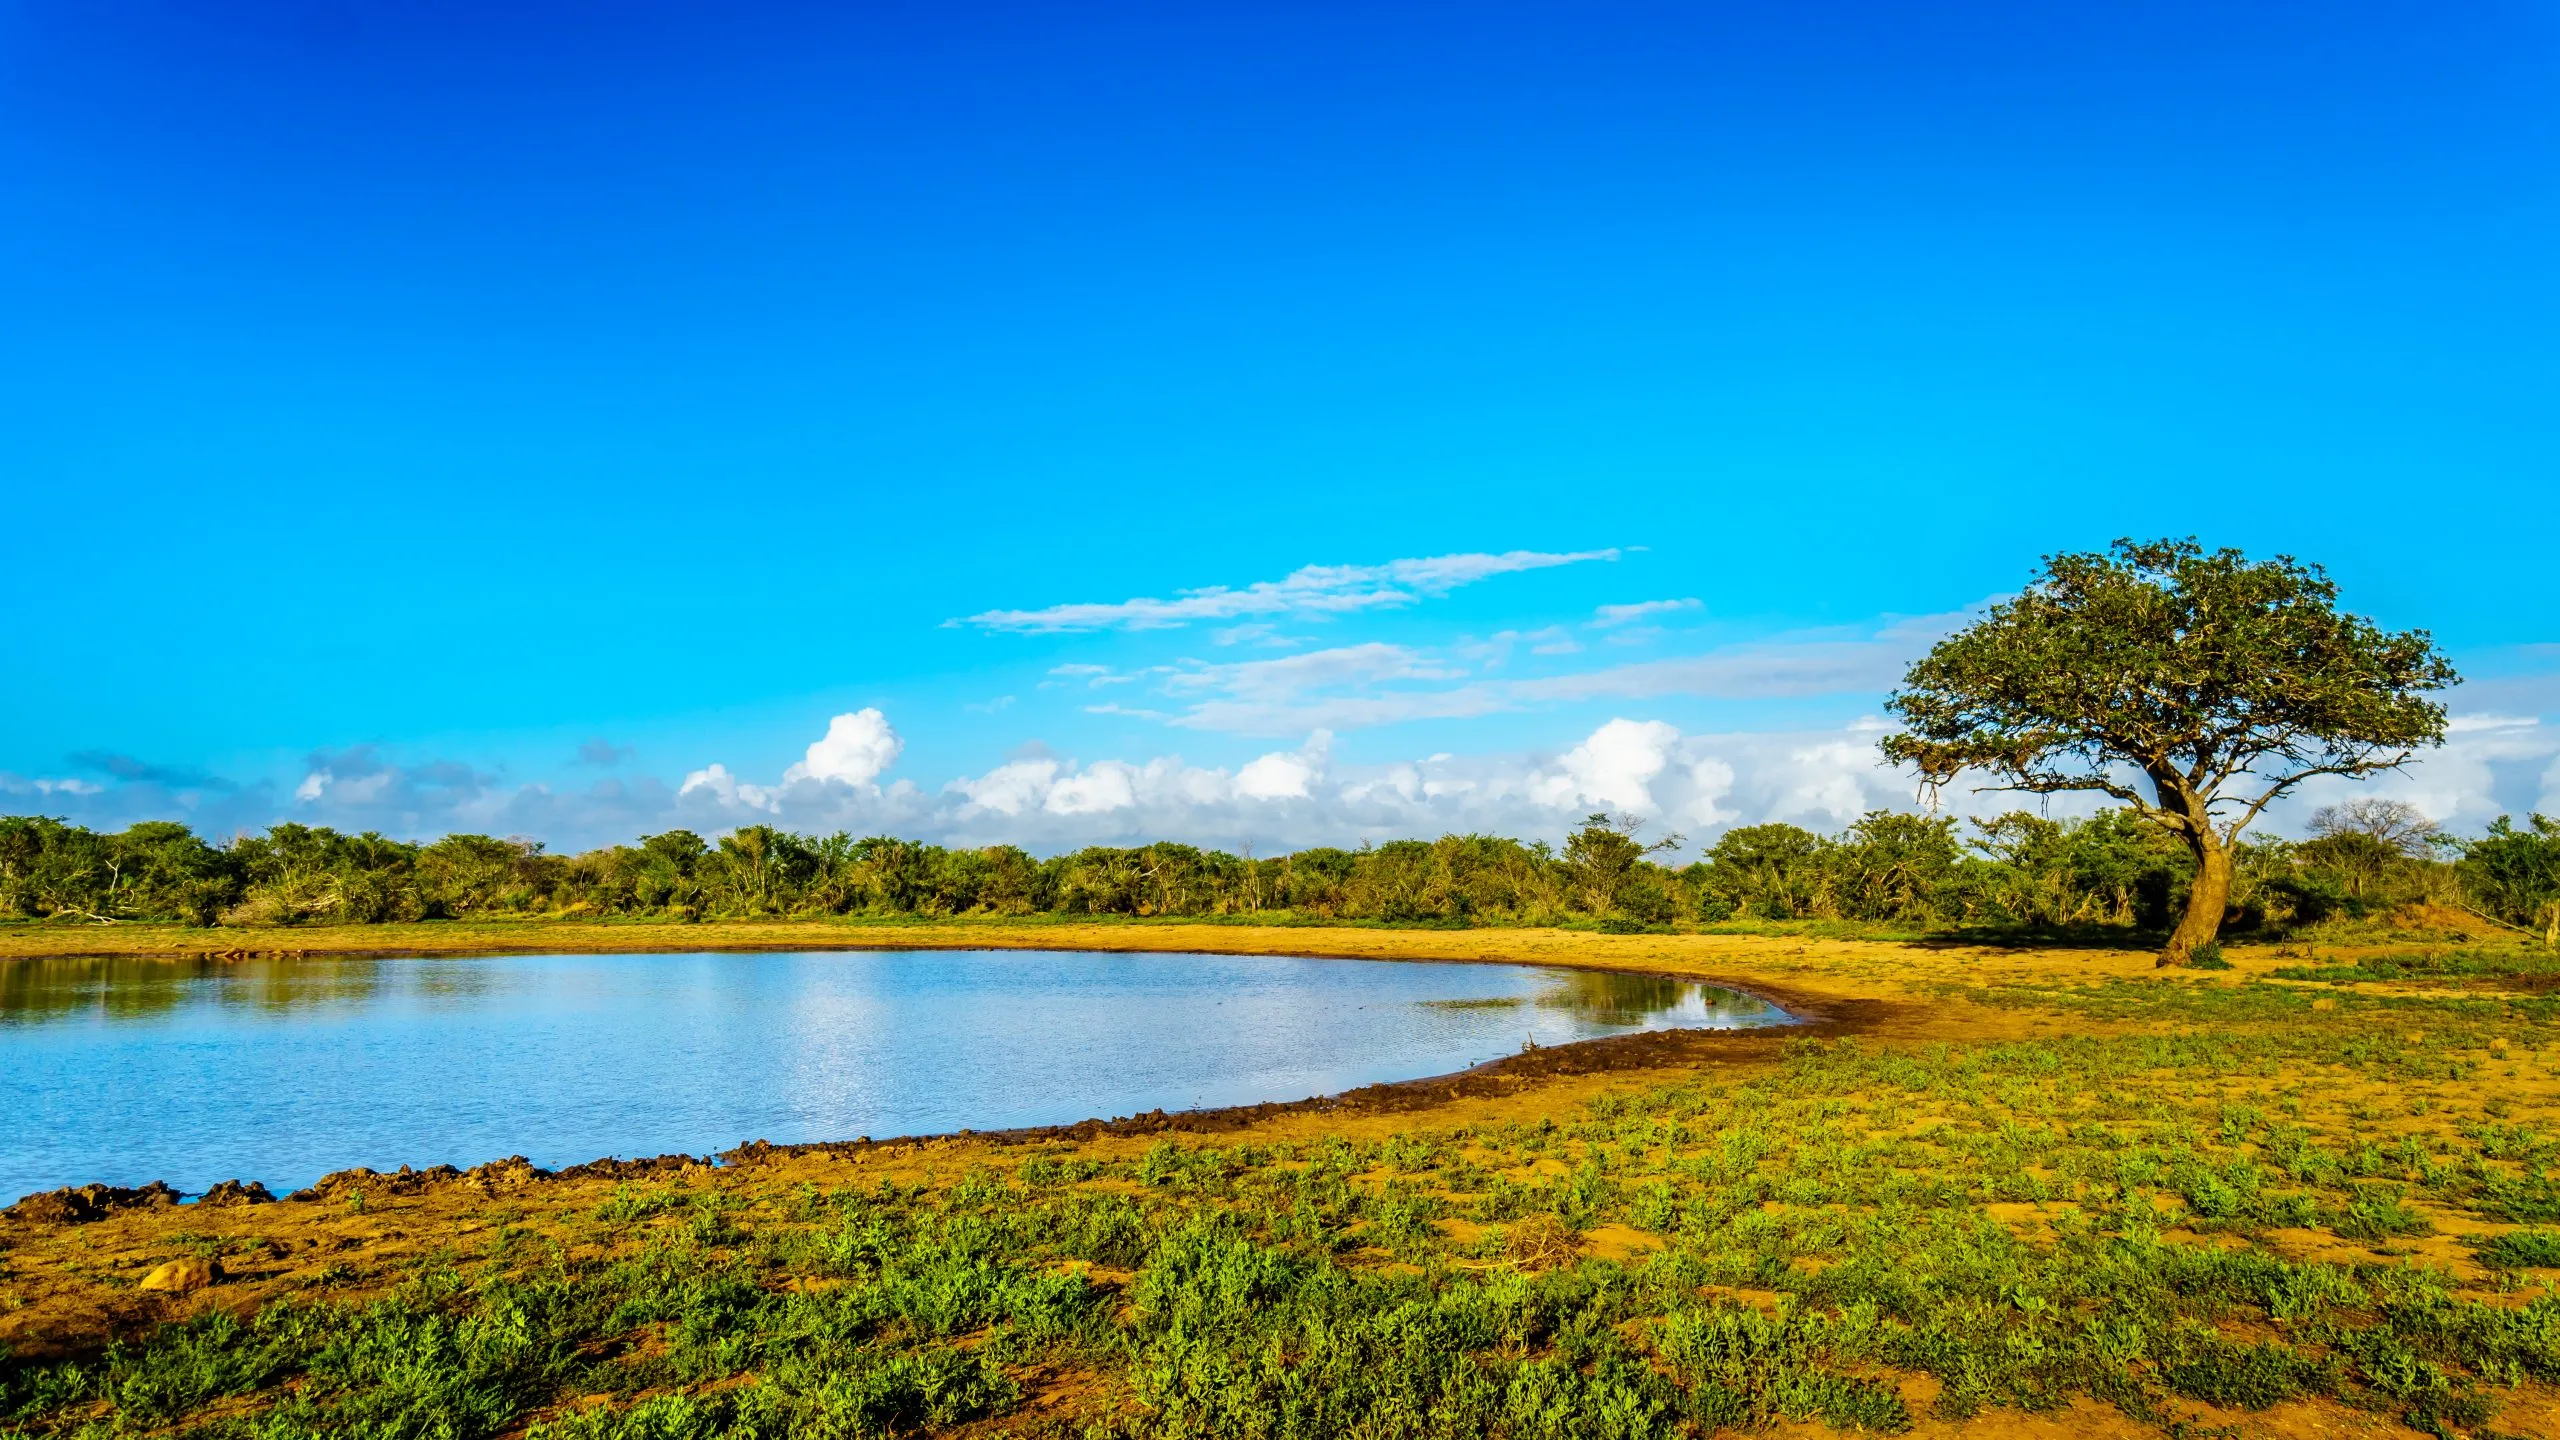 Point d'eau de Kumanadam dans le parc national Kruger en Afrique du Sud